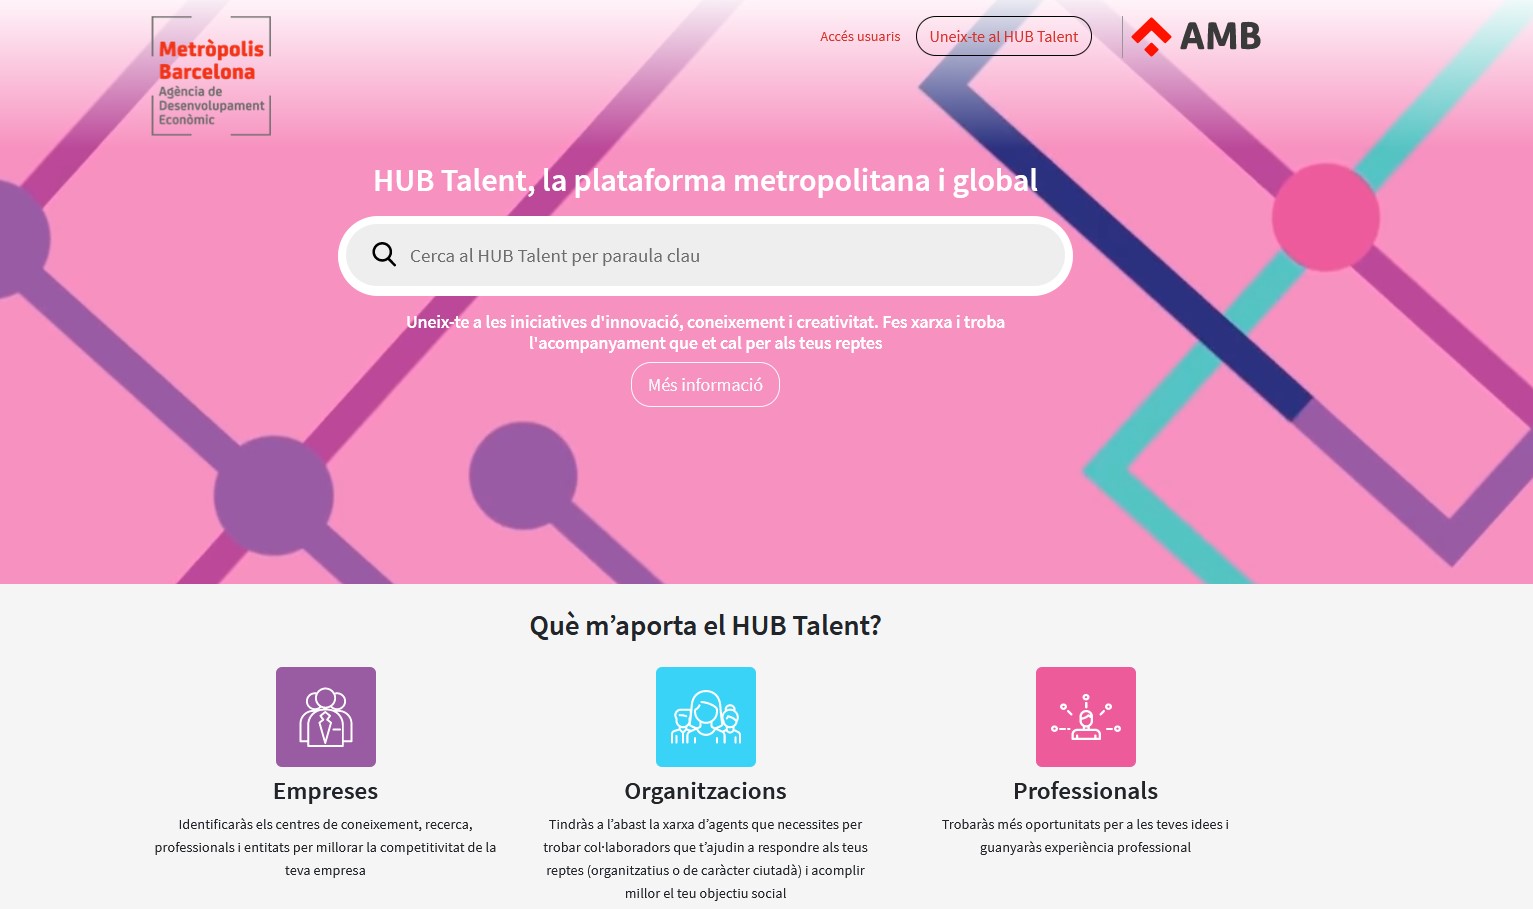 Què és el HUB Talent Metròpolis Barcelona?